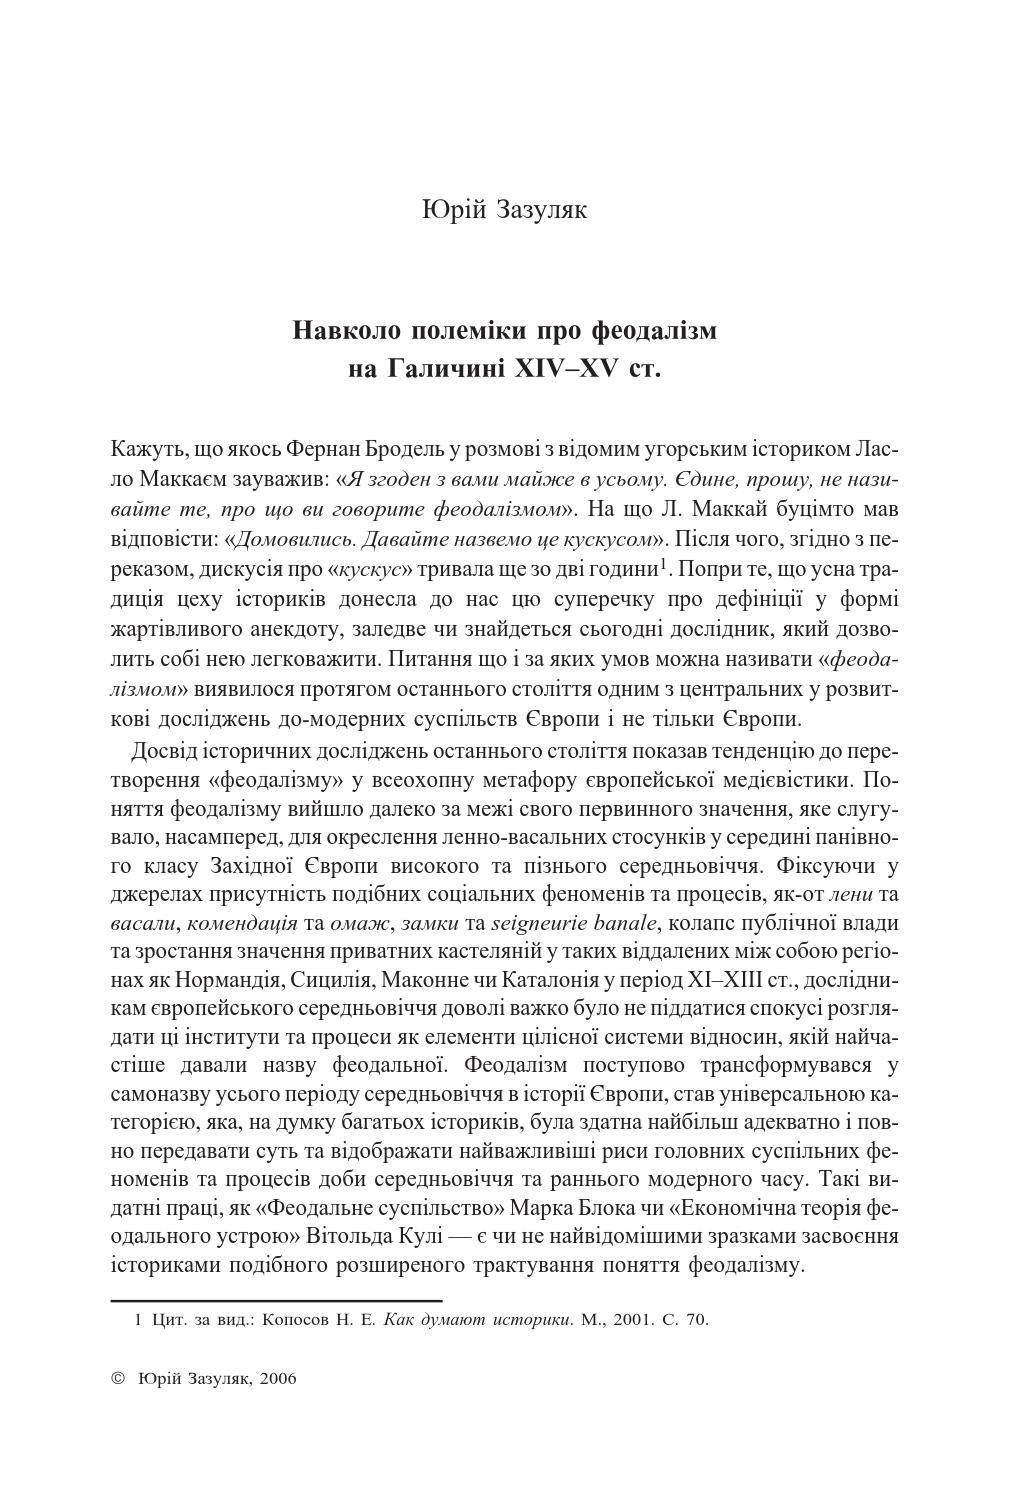 Навколо полеміки про феодалізм на Галичині XIV-XV ст., 2006, Юрій Зазуляк